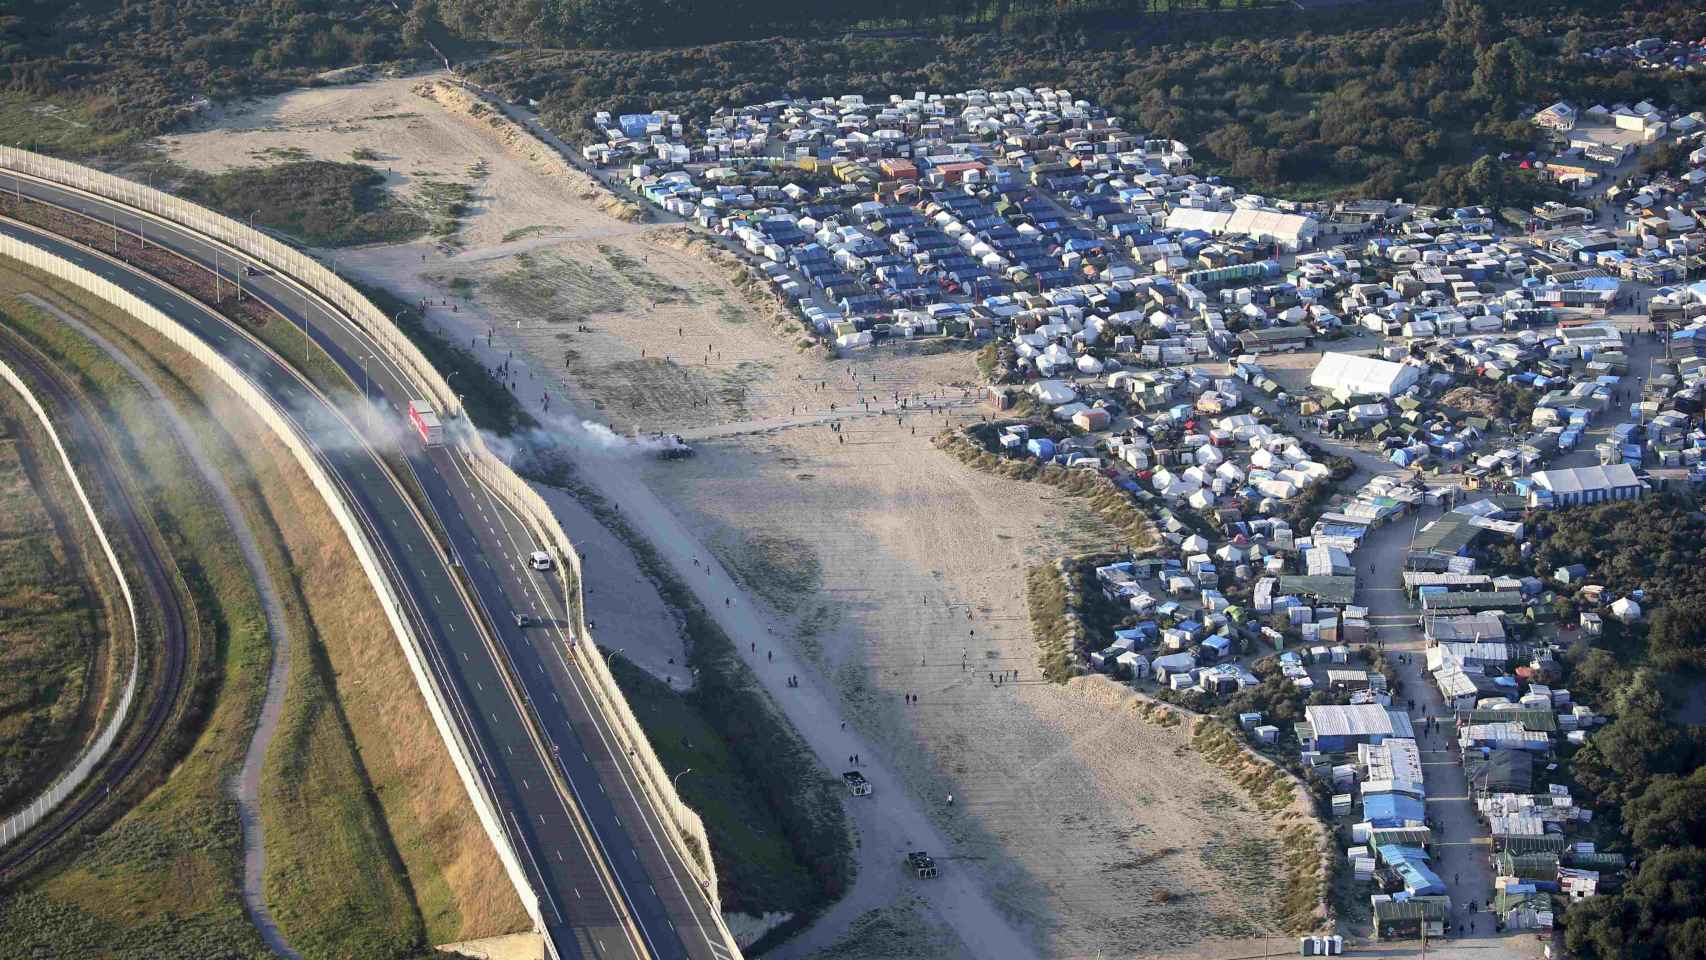 El campamento informal de Calais se encuentra junto a la autopista que lleva a Reino Unido.